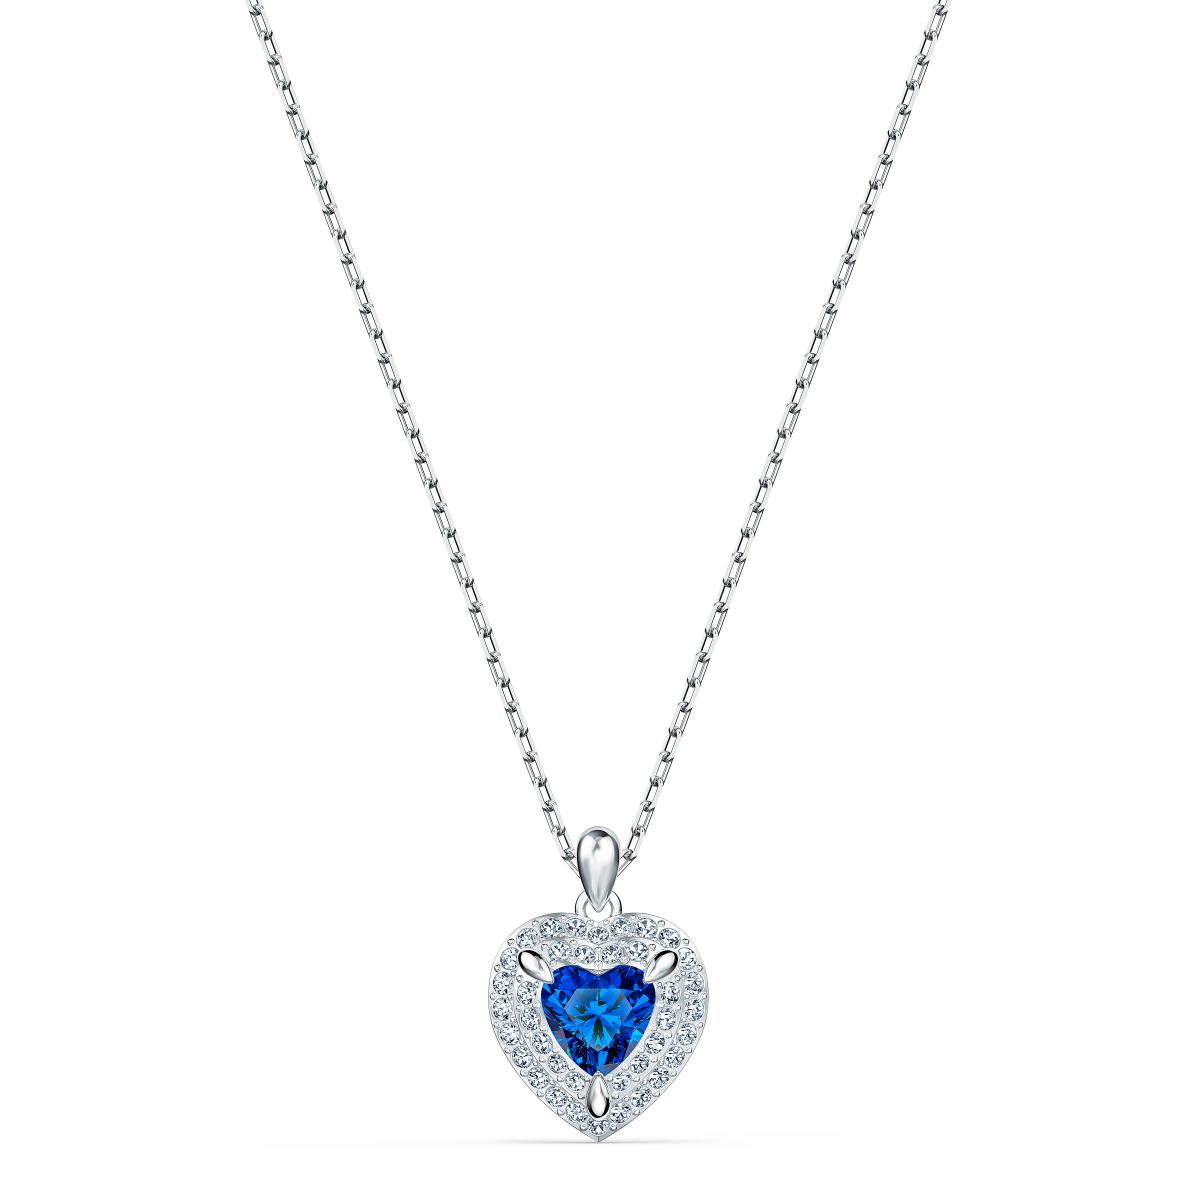 COLLIER Swarovski 5511541 - Collier Métal Argenté Coeur Strass et Cristal  Bleu Femme